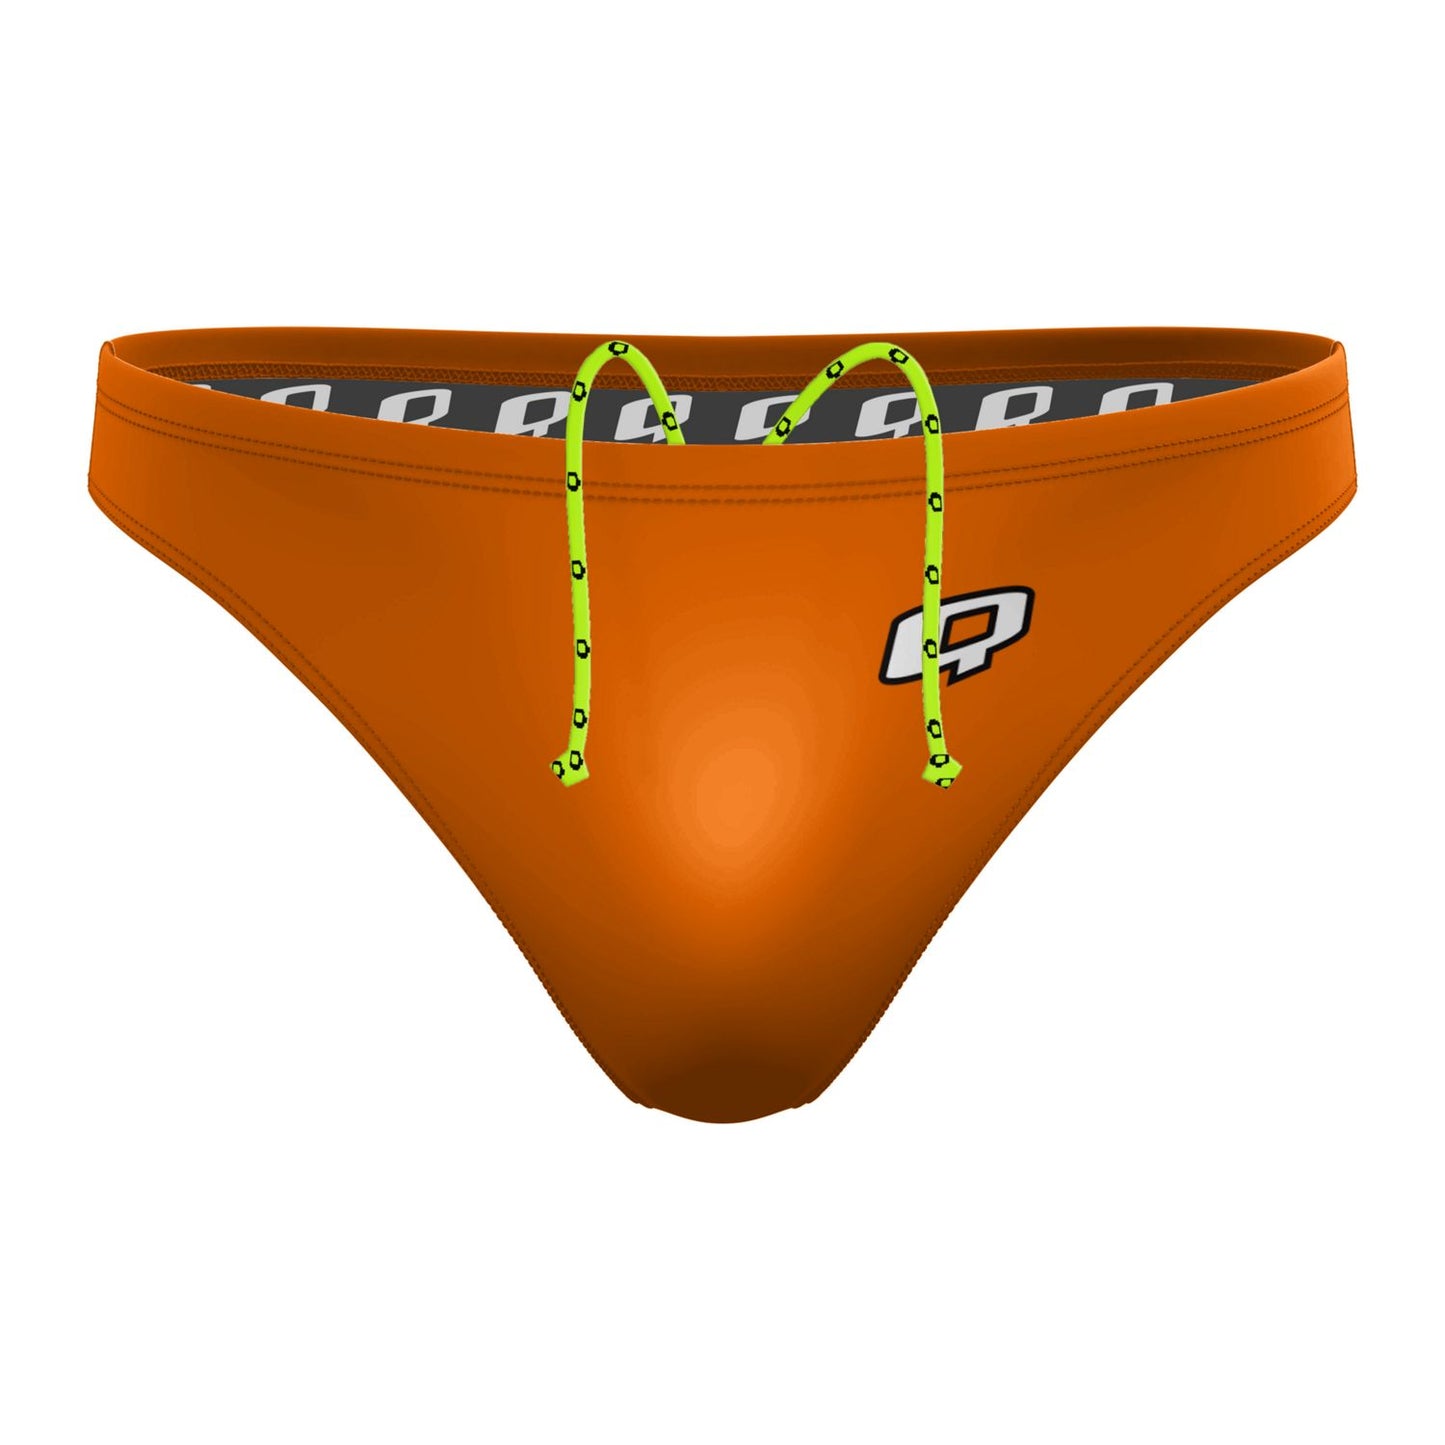 Orange Solid Waterpolo Brief Swimwear